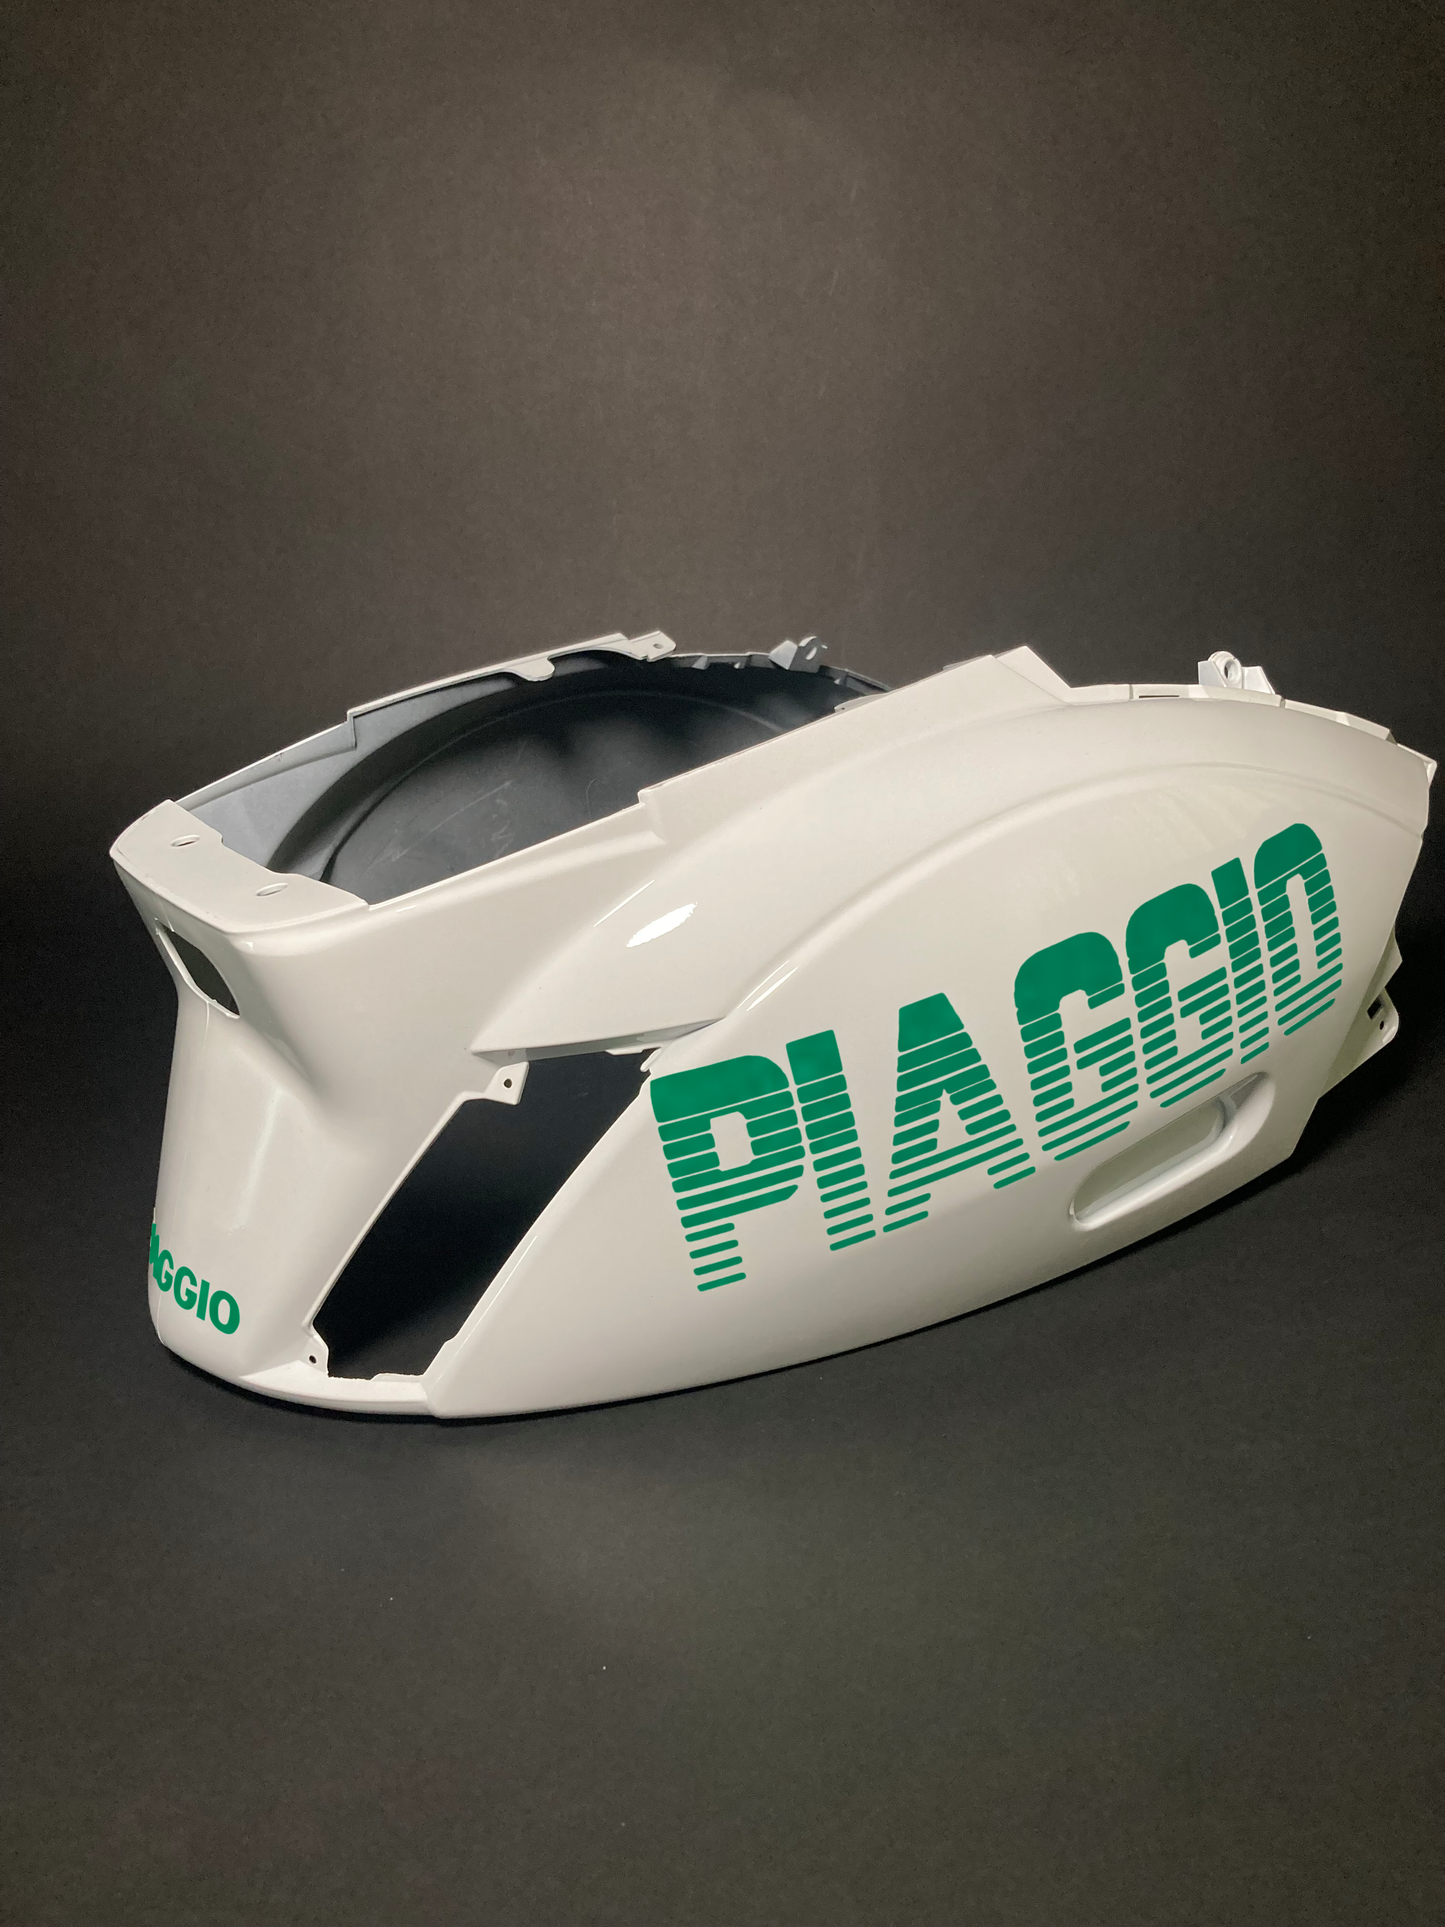 Reißverschluss Piaggio | Reflektierendes Weiß